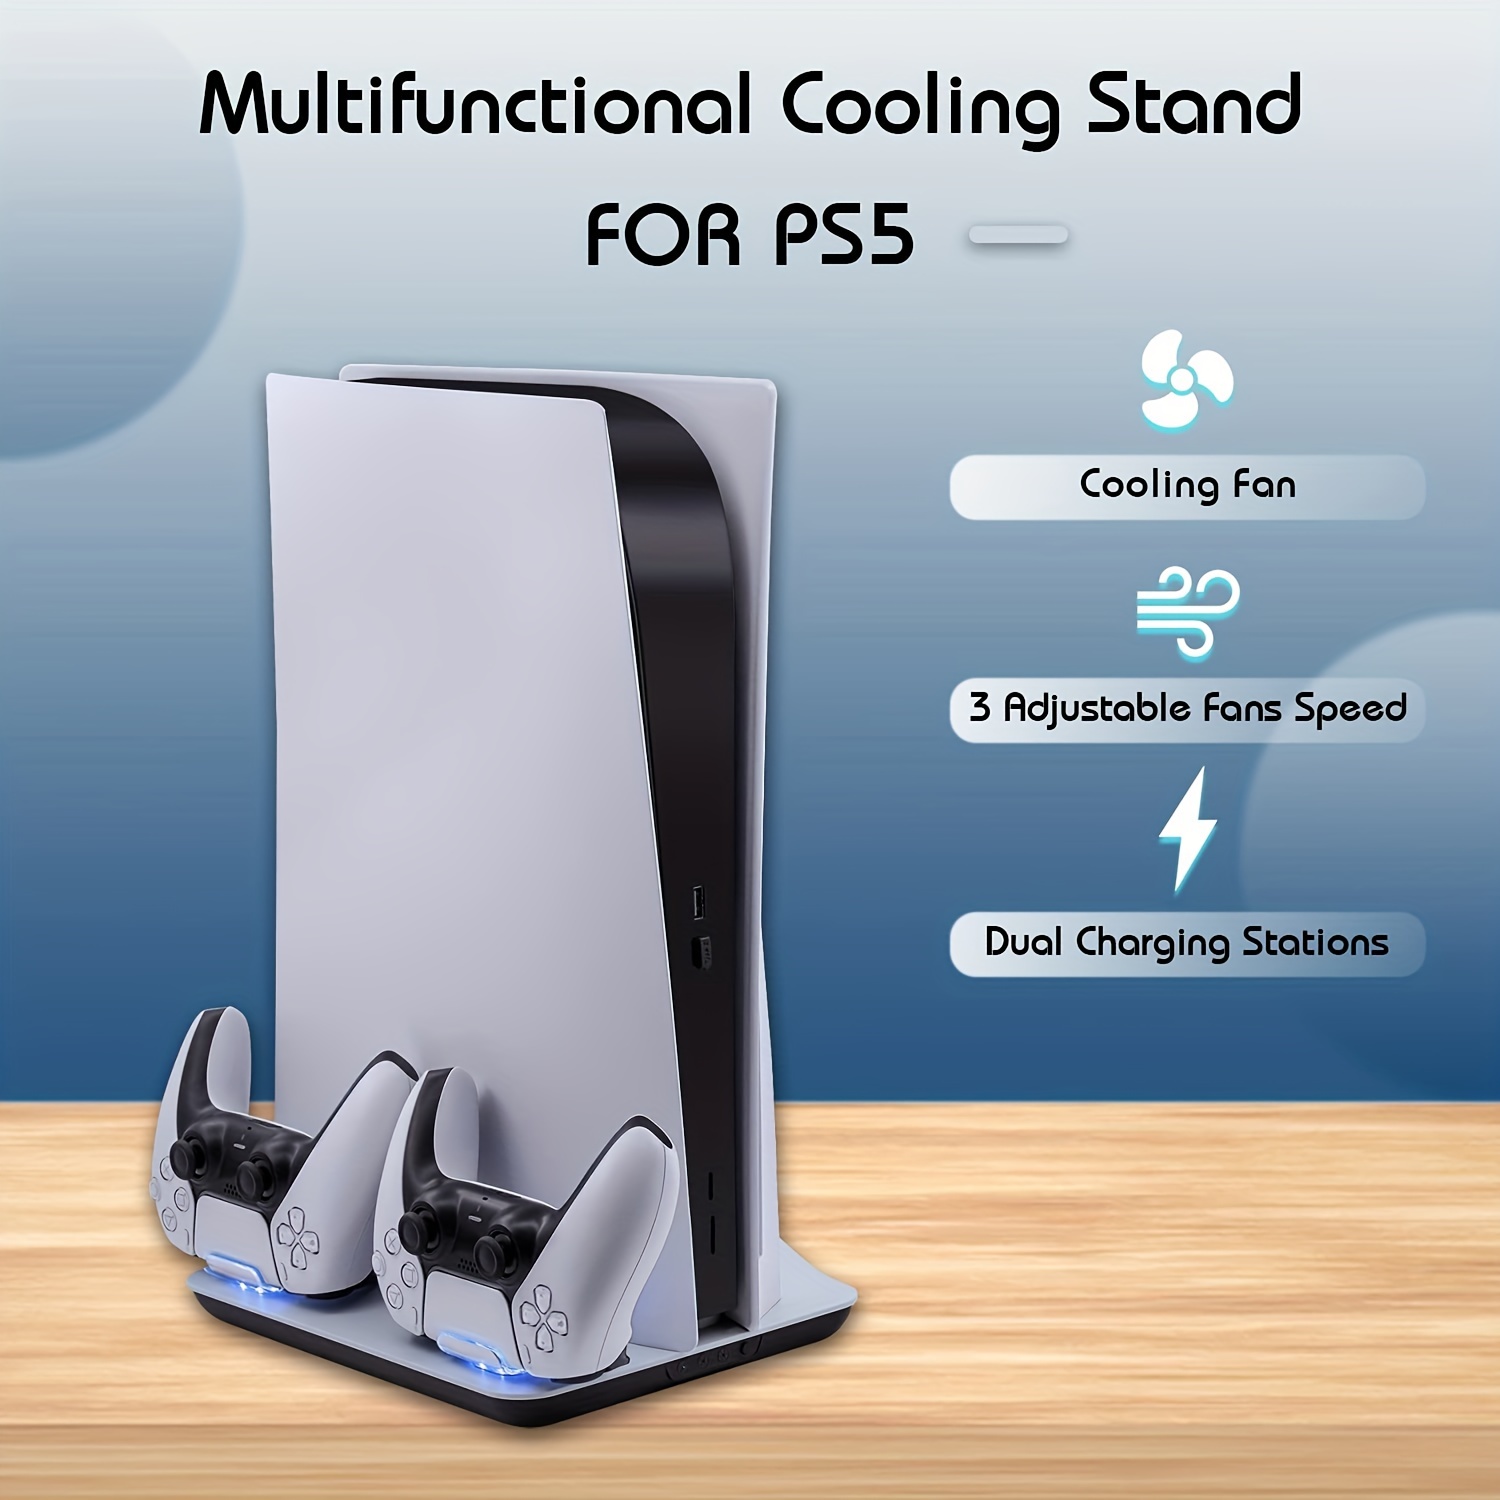 Ventilador de enfriamiento para consola Ps5 Slim, Enfriador de ventilador  delgado Ps5 con luz LED para disco Ps5 y edición digital, Accesorios Ps5  Slim